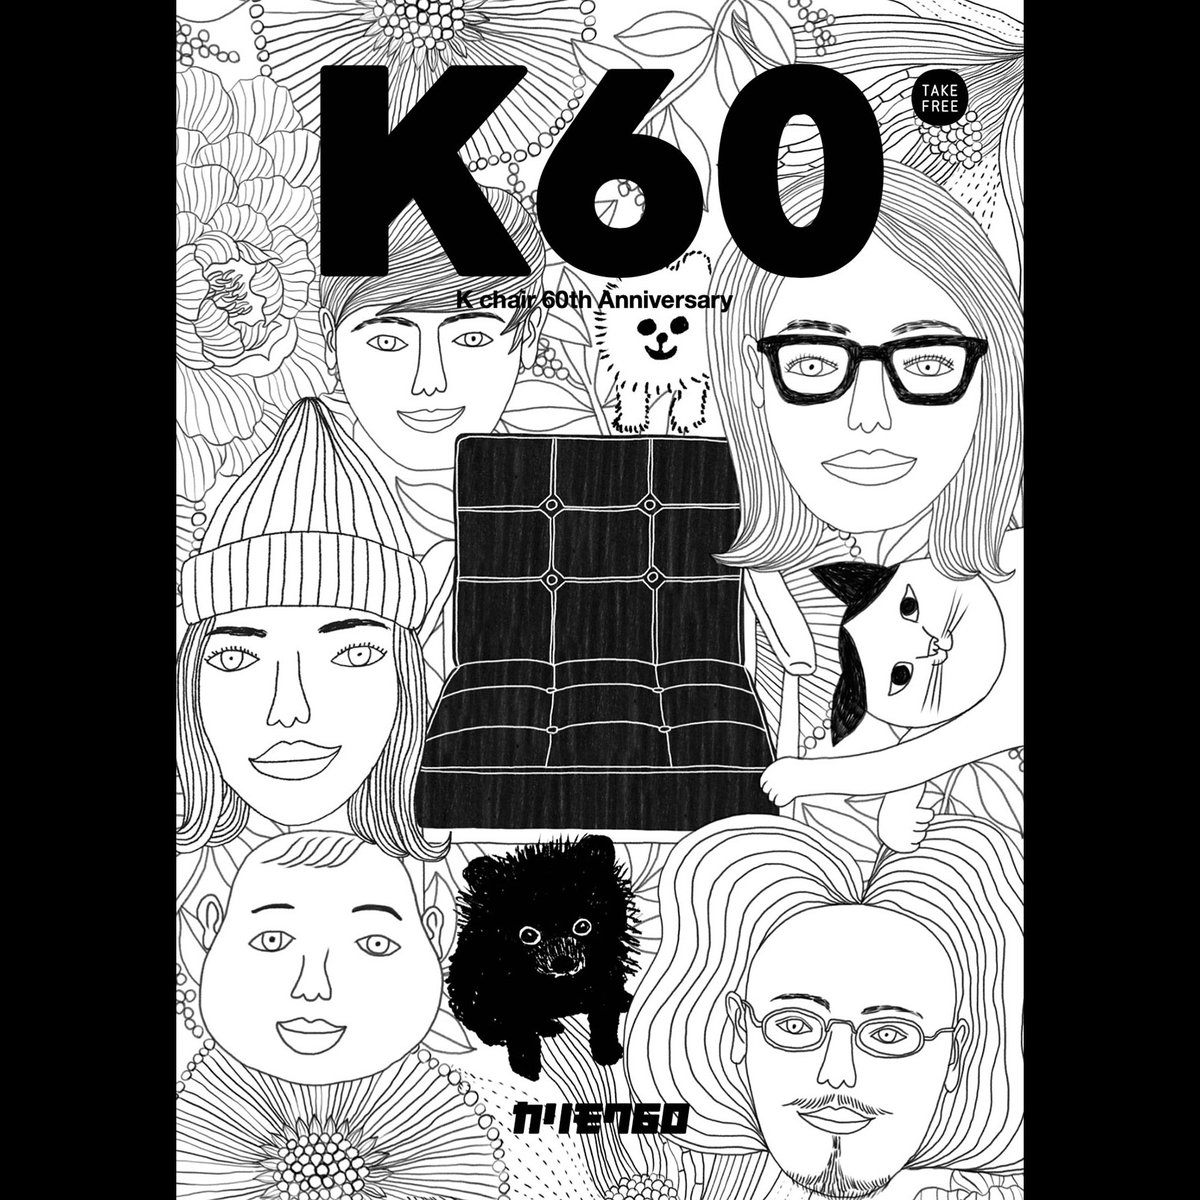 【仕事】カリモクKチェア60周年メインビジュアルを担当しました。10年前、ナガオカケンメイさんとの初仕事となった50周年ポスターから、もう10年も経つんだなと。50周年のポスターも載せておきます。
https://t.co/5FSPeU6tgu 